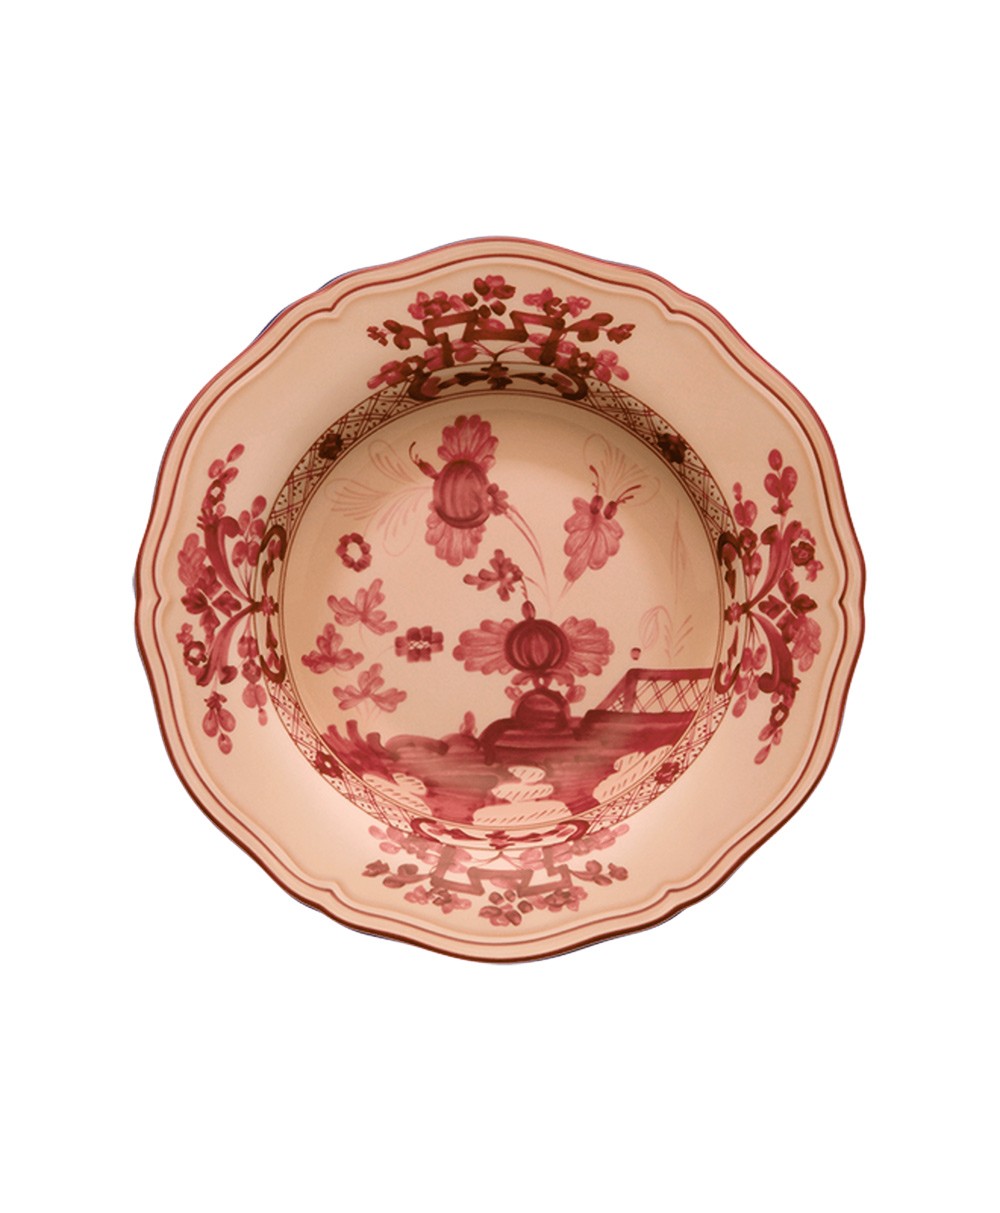 Produktbild "Oriente Vermiglio Suppenteller" von Ginori 1735 im RAUM Concept store